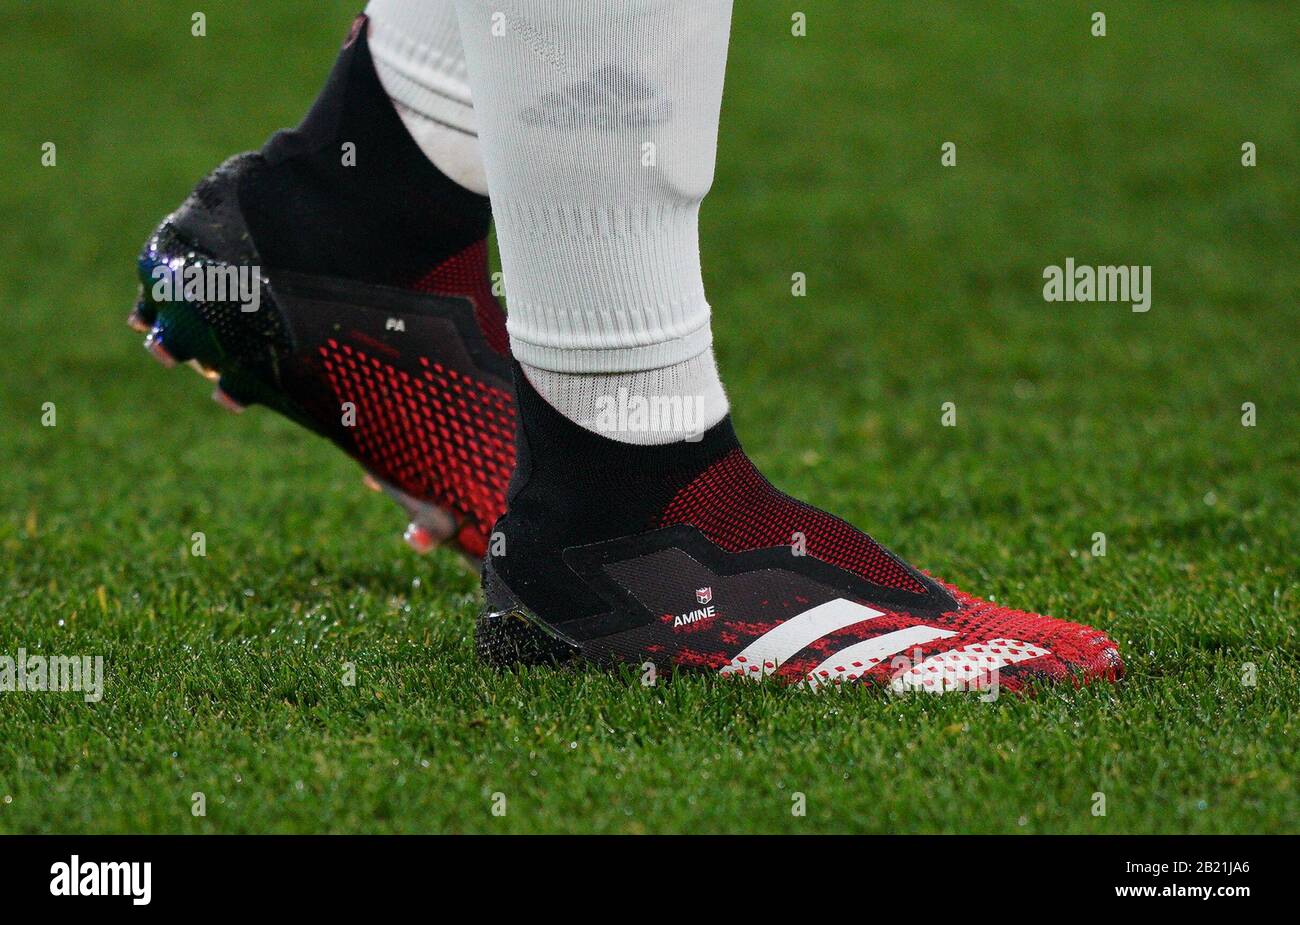 Londres, Reino Unido. 27 de febrero de 2020. Las botas de fútbol Adidas Mesut Ozil del exhibiendo AMINA durante el partido de la Liga de la UEFA de